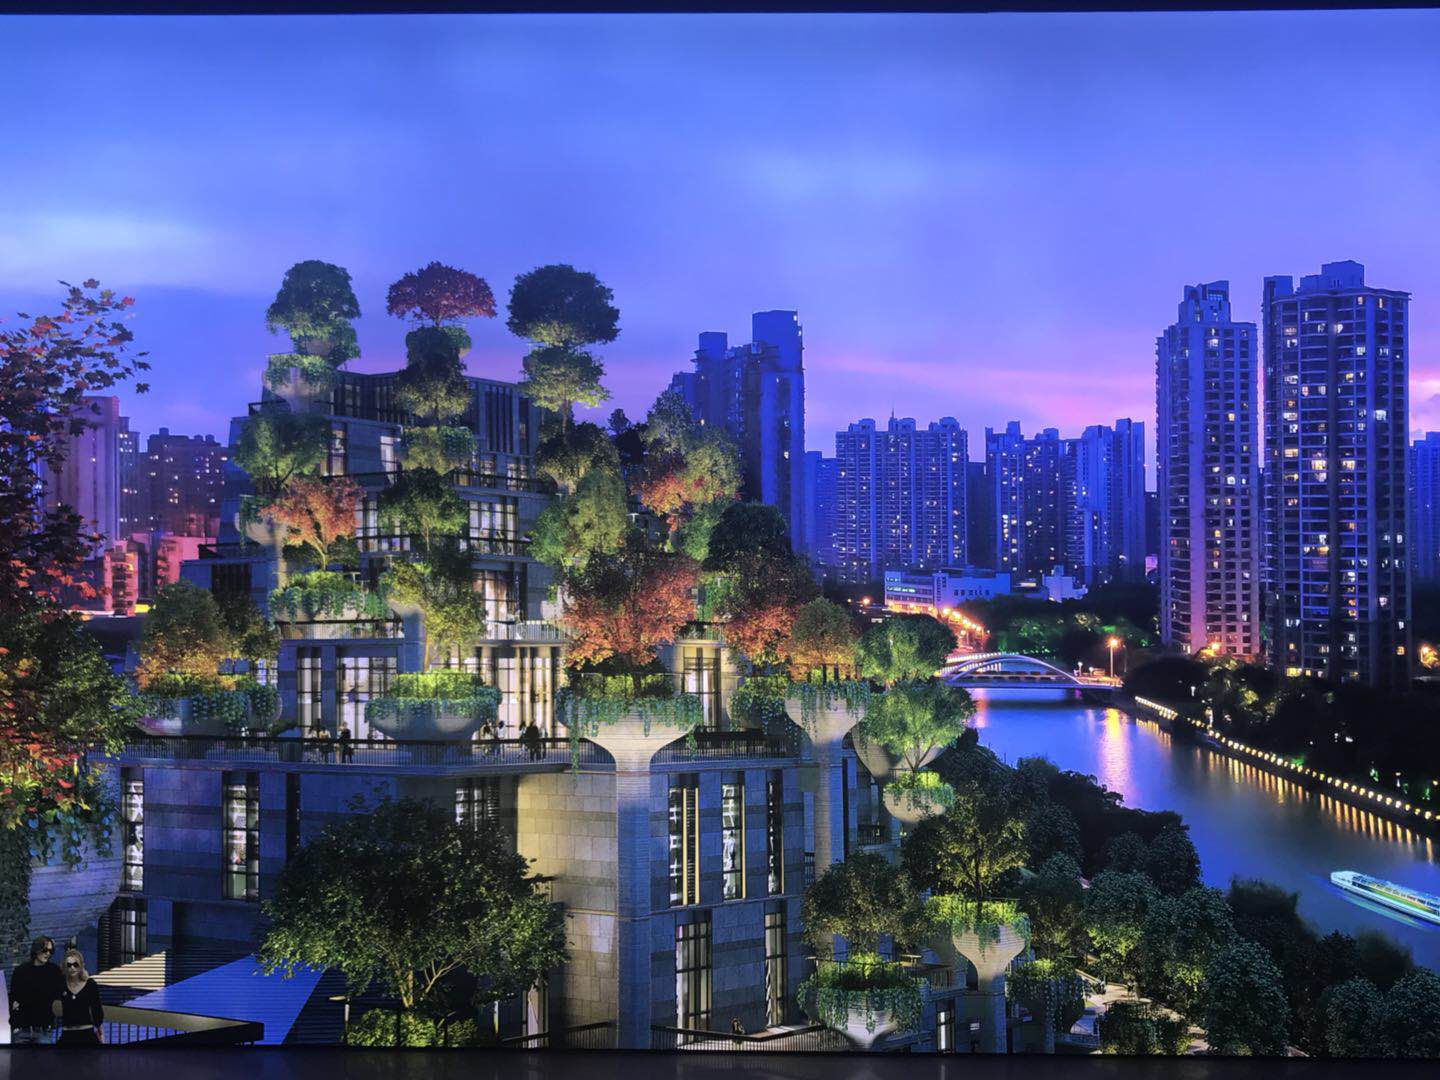 Reimagined Suzhou Creek